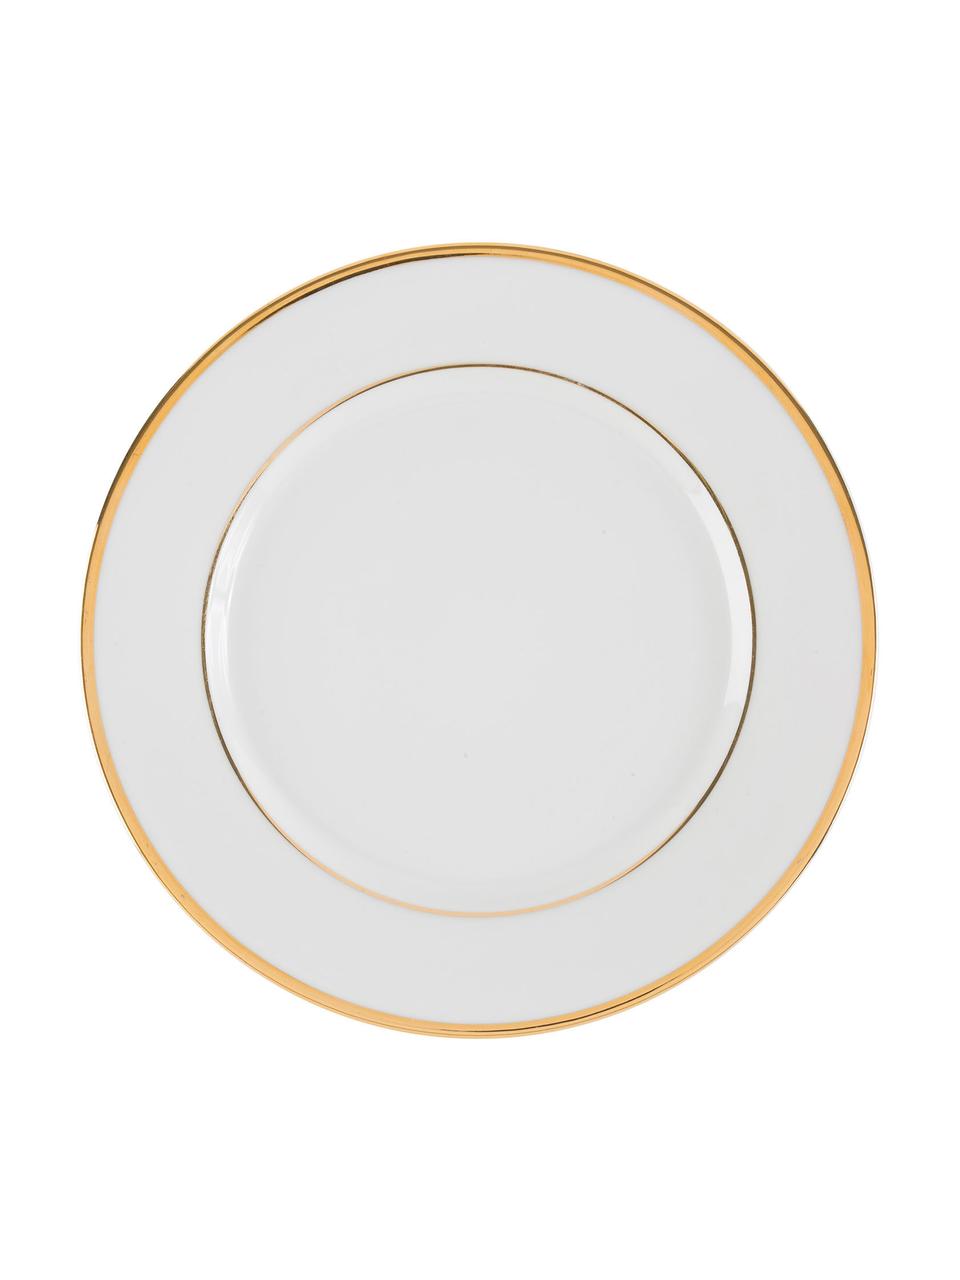 Assiette plate porcelaine bord doré Ginger, 6 pièces, Porcelaine, Blanc, couleur dorée, Ø 27 cm